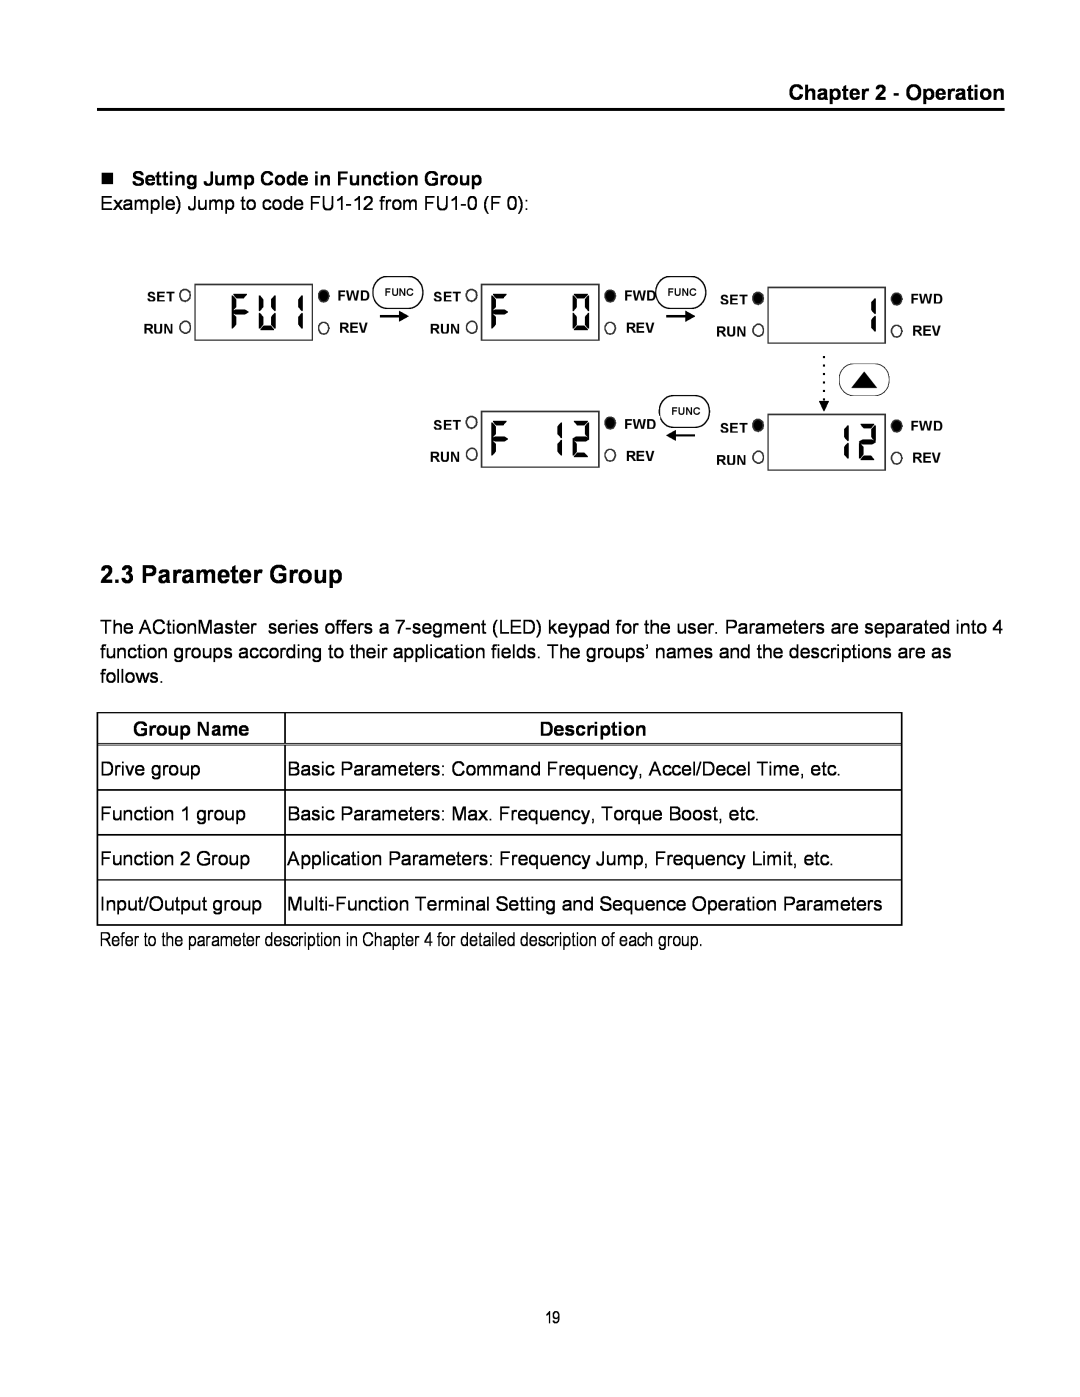 Cleveland Range inverter manual Parameter Group, Operation, Group Name, Description 